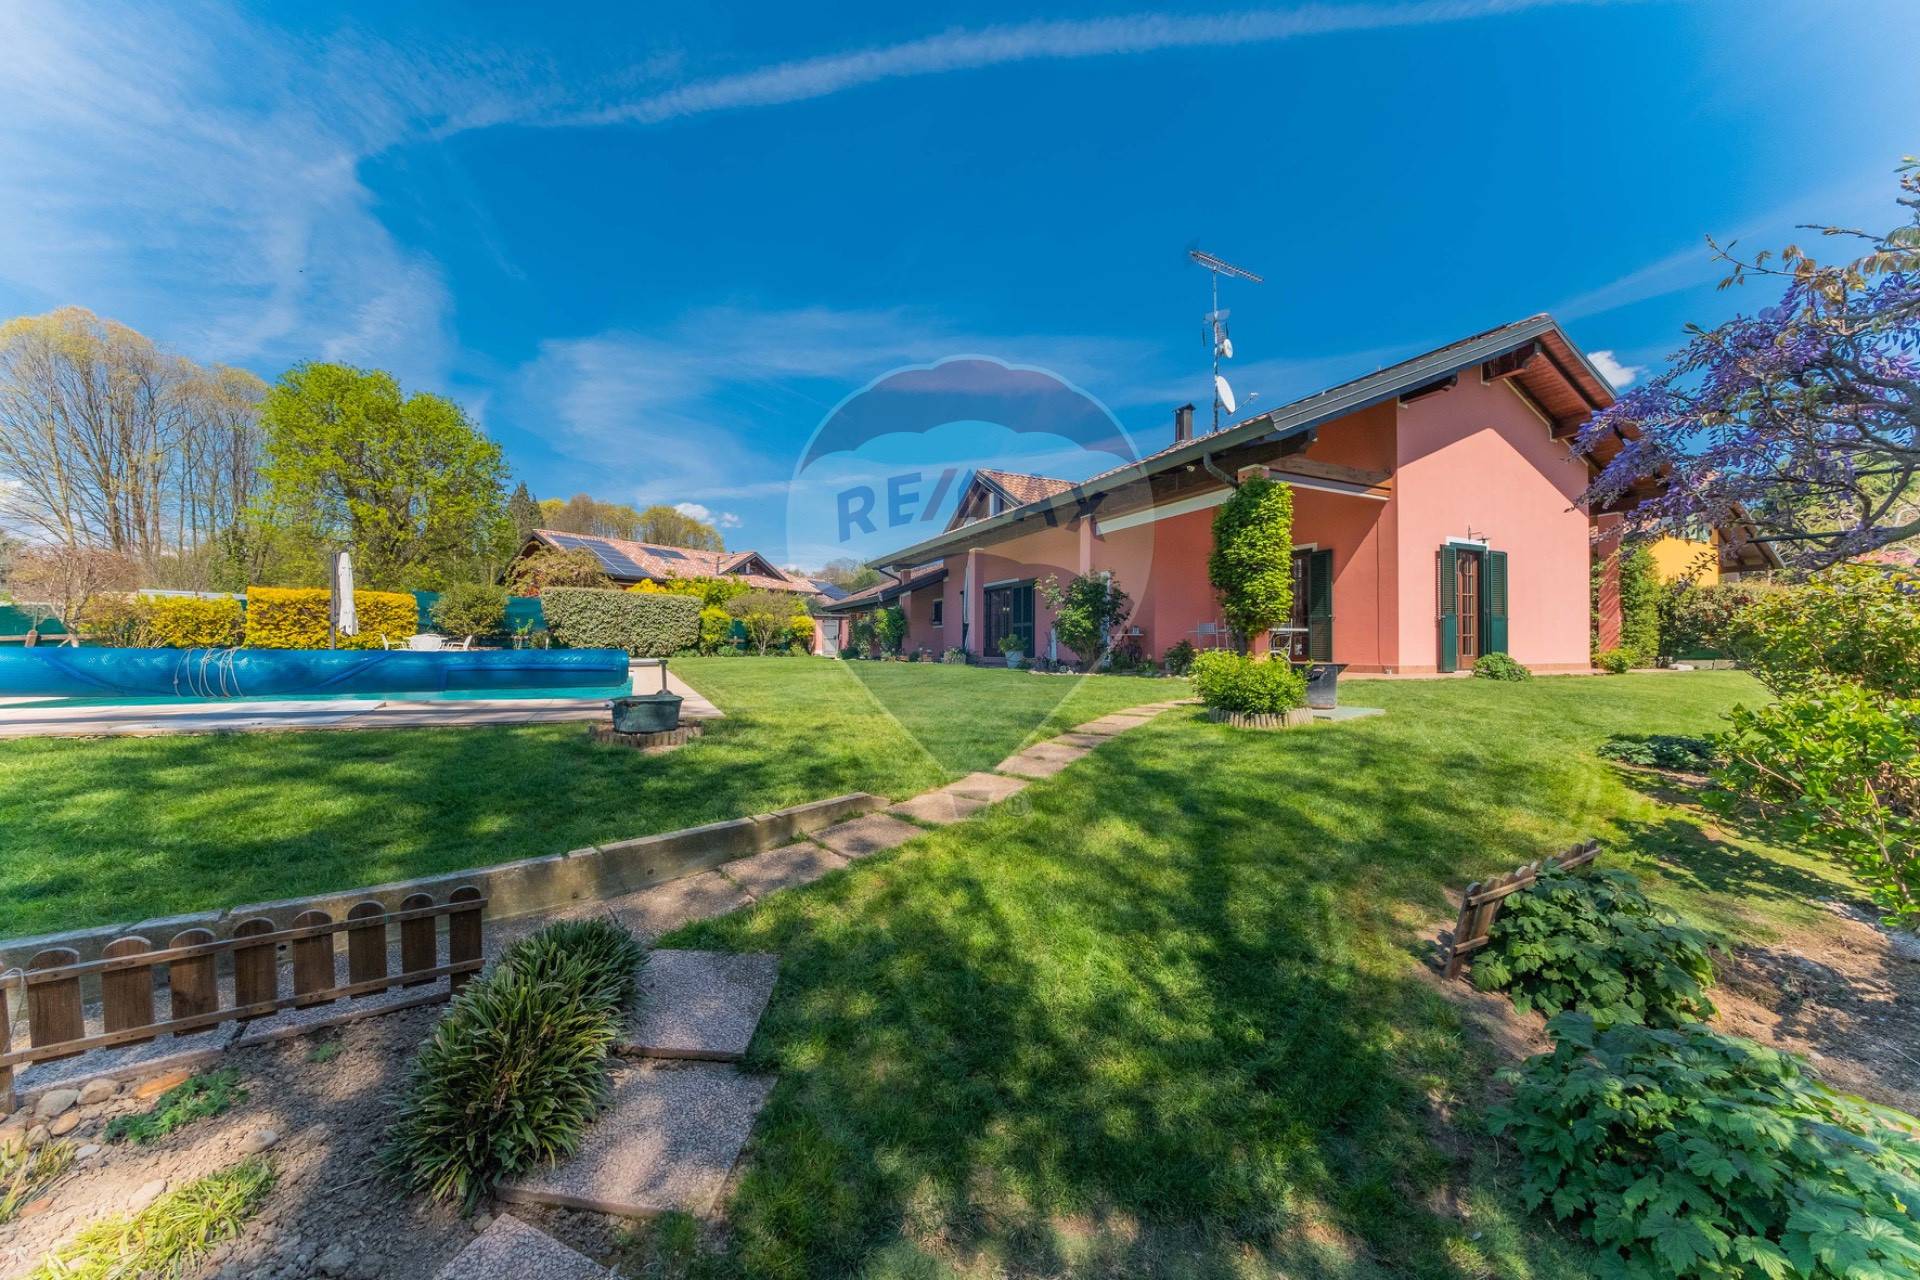 Villa in vendita a Agrate Conturbia, 7 locali, prezzo € 550.000 | CambioCasa.it